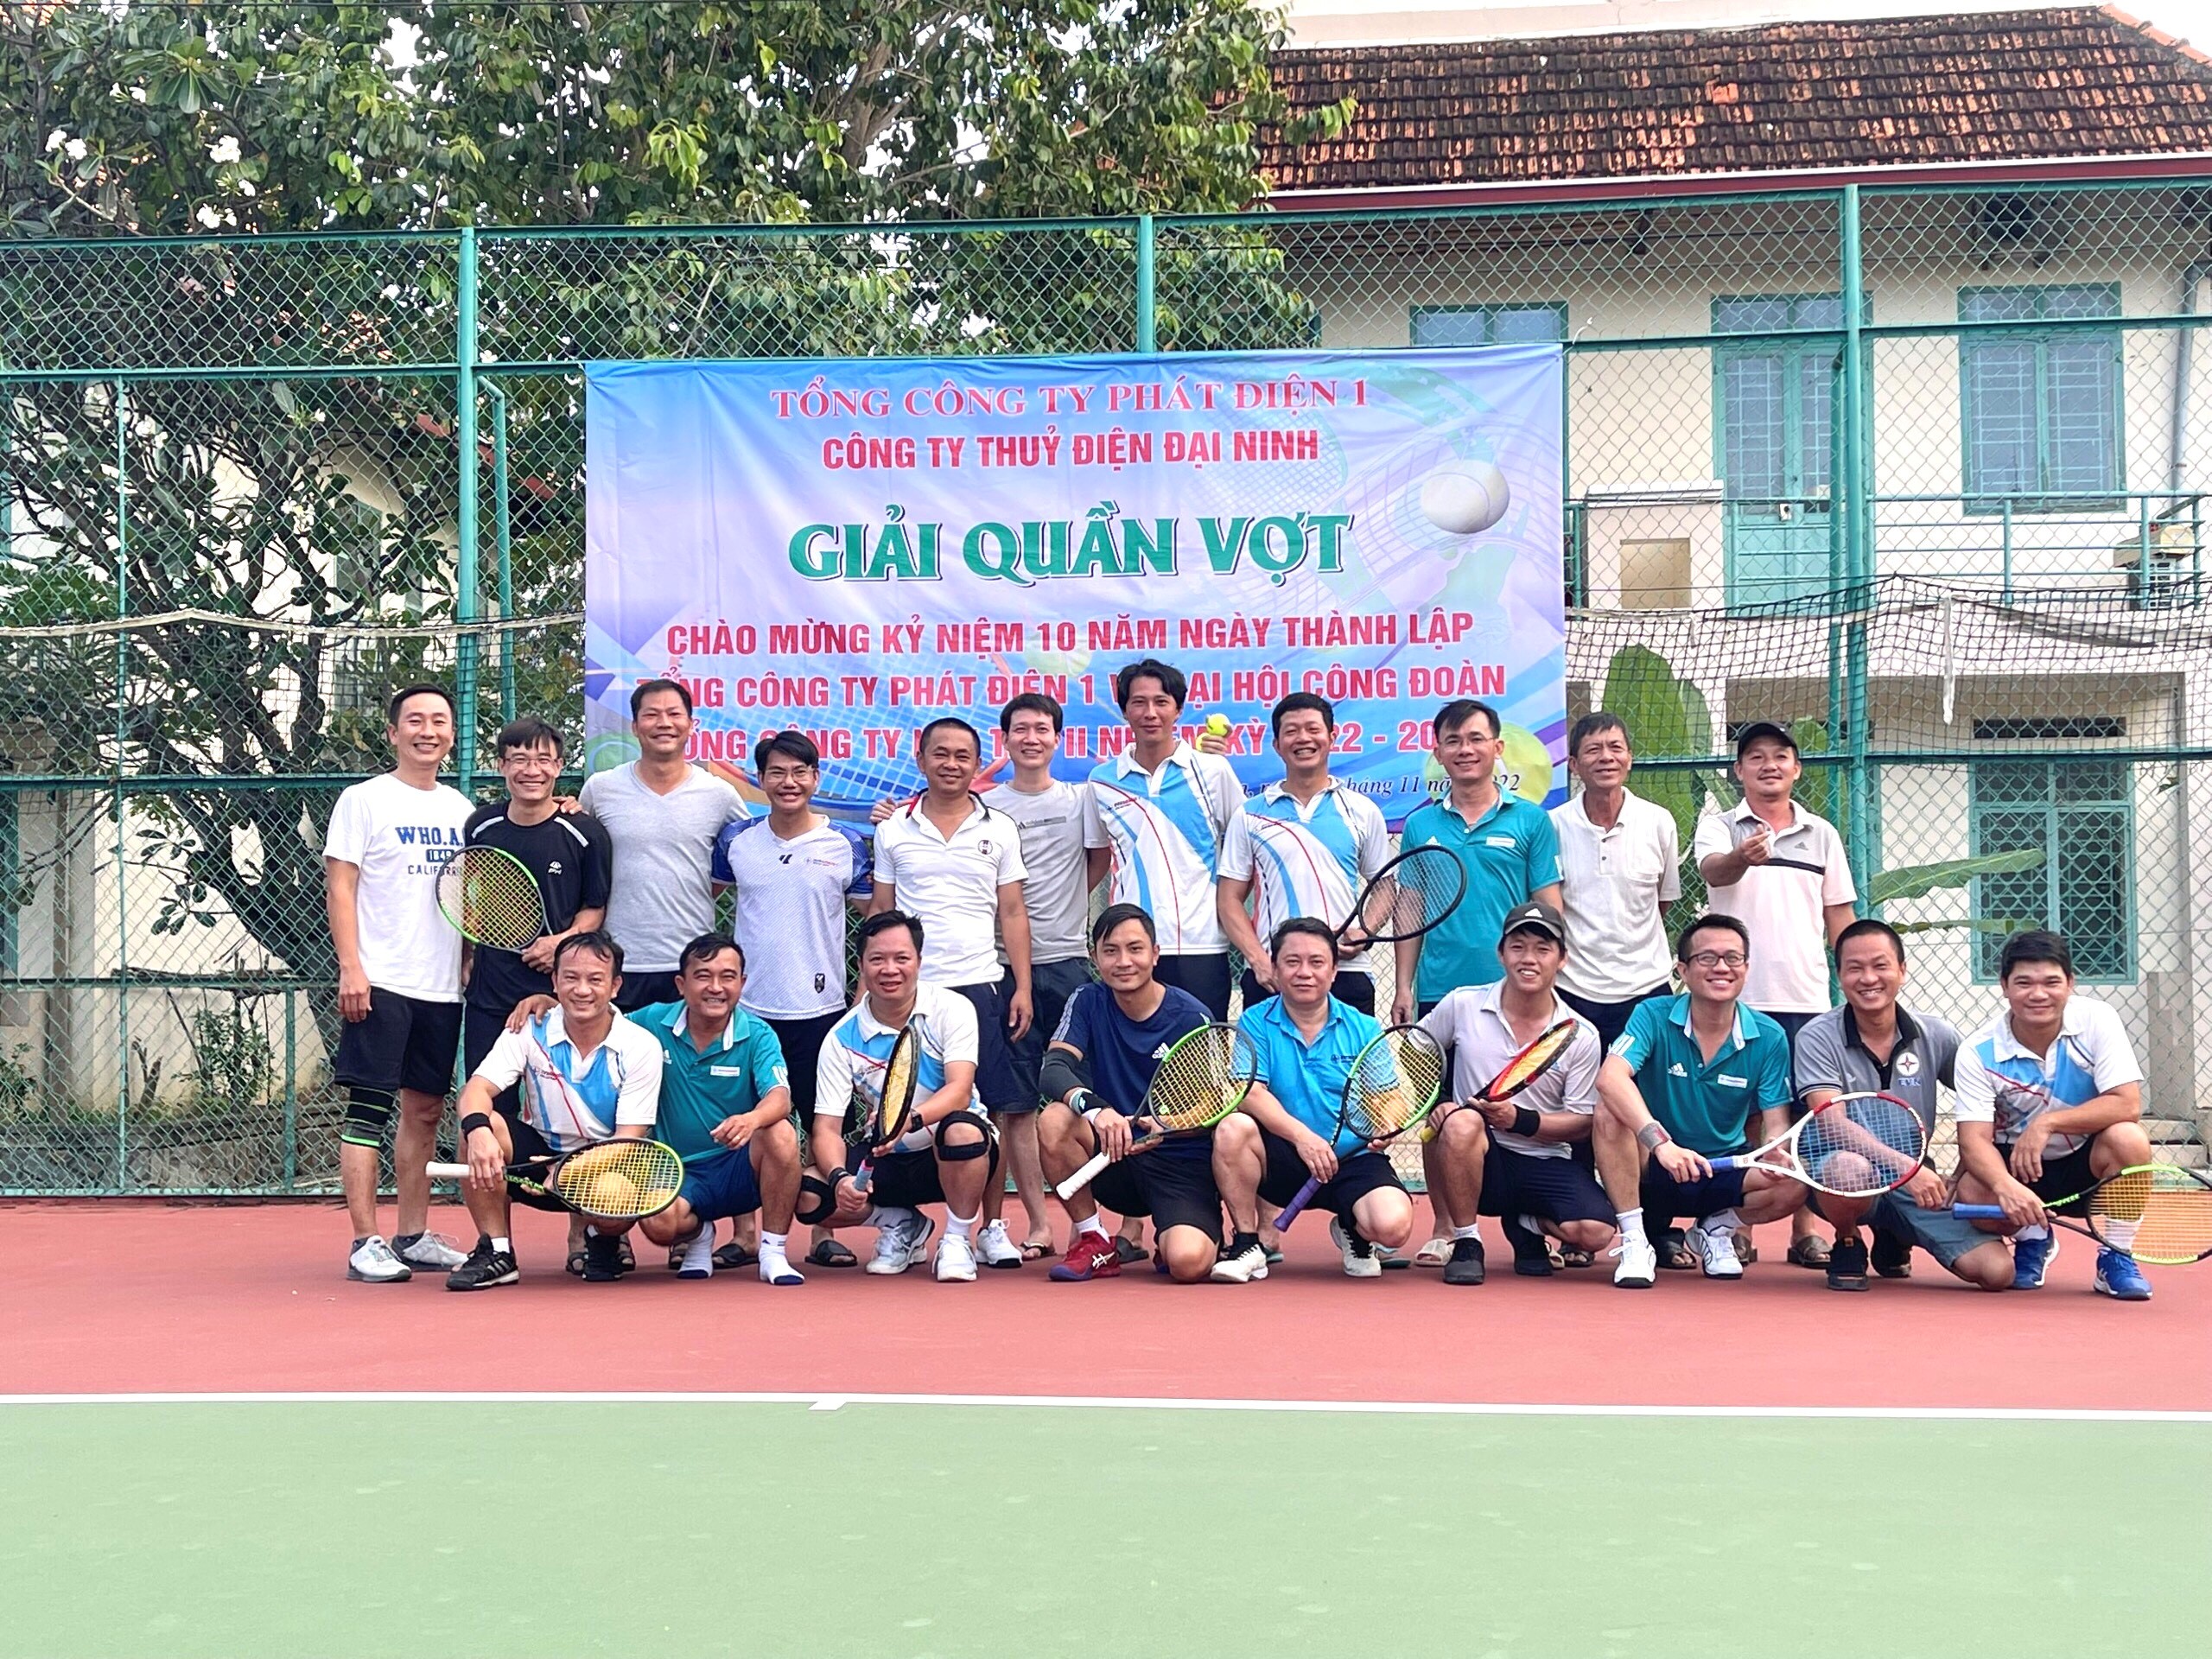 Công ty Thủy điện Đại Ninh tổ chức thành công Giải quần vợt  Chào mừng kỷ niệm 10 năm thành lập Tổng công ty Phát điện 1 và Đại hội Công đoàn Tổng công ty lần thứ II, nhiệm kỳ 2022 - 2027